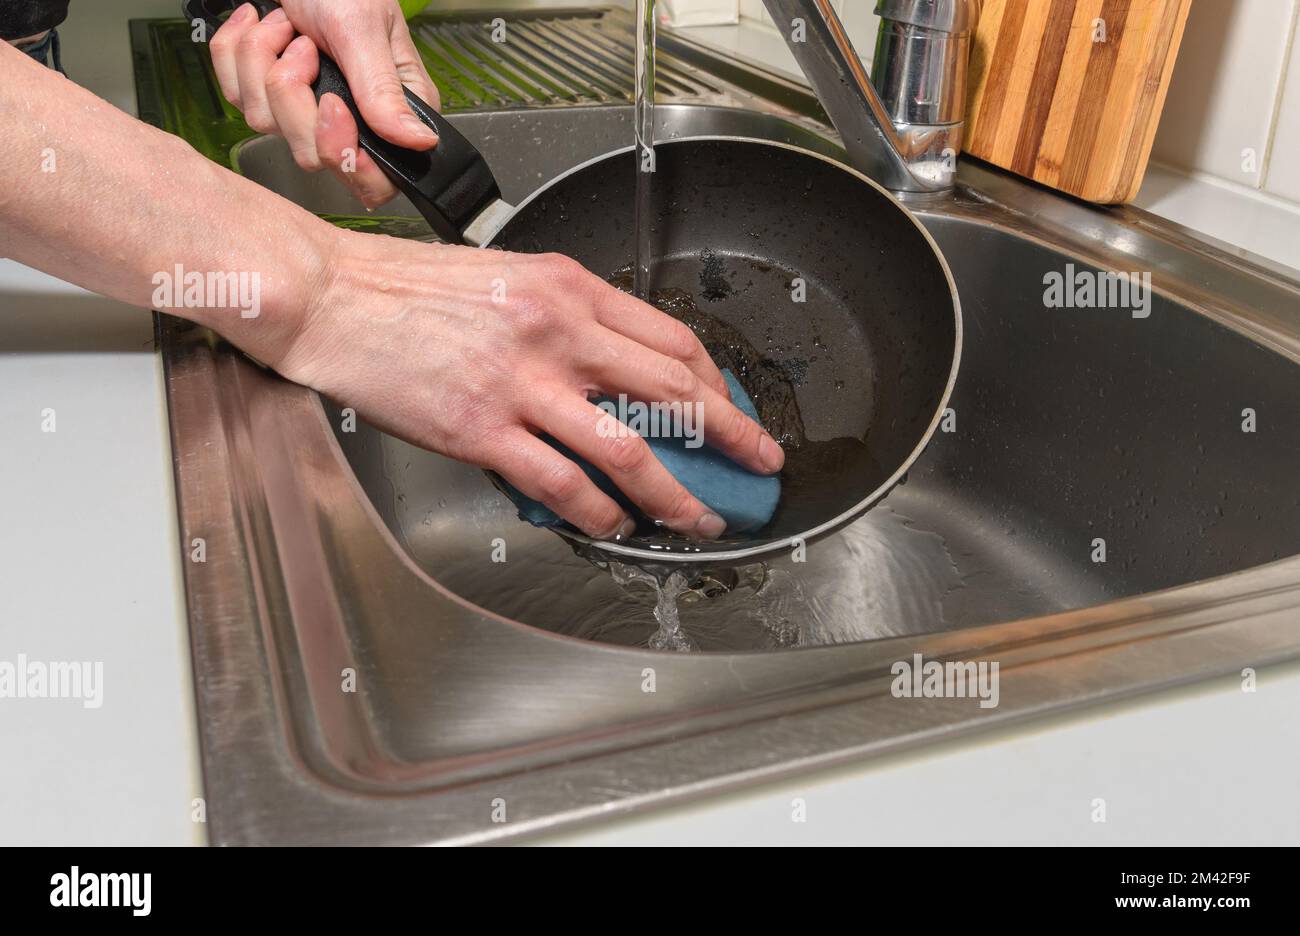 https://c8.alamy.com/compes/2m42f9f/una-mujer-trata-de-limpiar-una-sarten-quemada-con-sus-manos-y-una-esponja-para-lavar-platos-2m42f9f.jpg